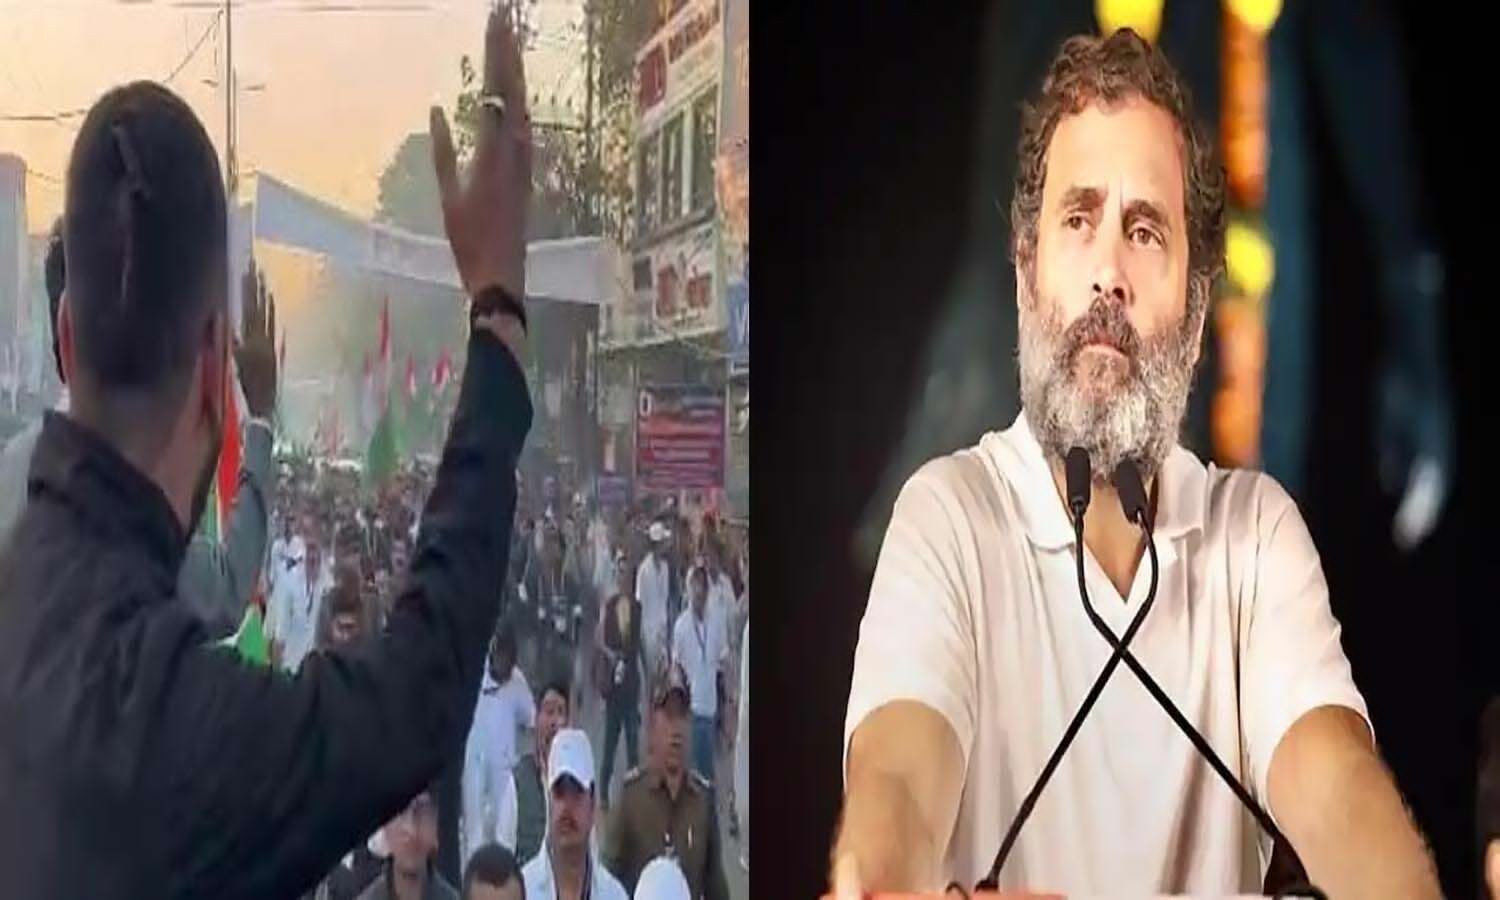 Bharat Jodo Yatra: Modi-Modi slogans raised during Rahul Gandhi’s Bharat Jodo Yatra in Indore